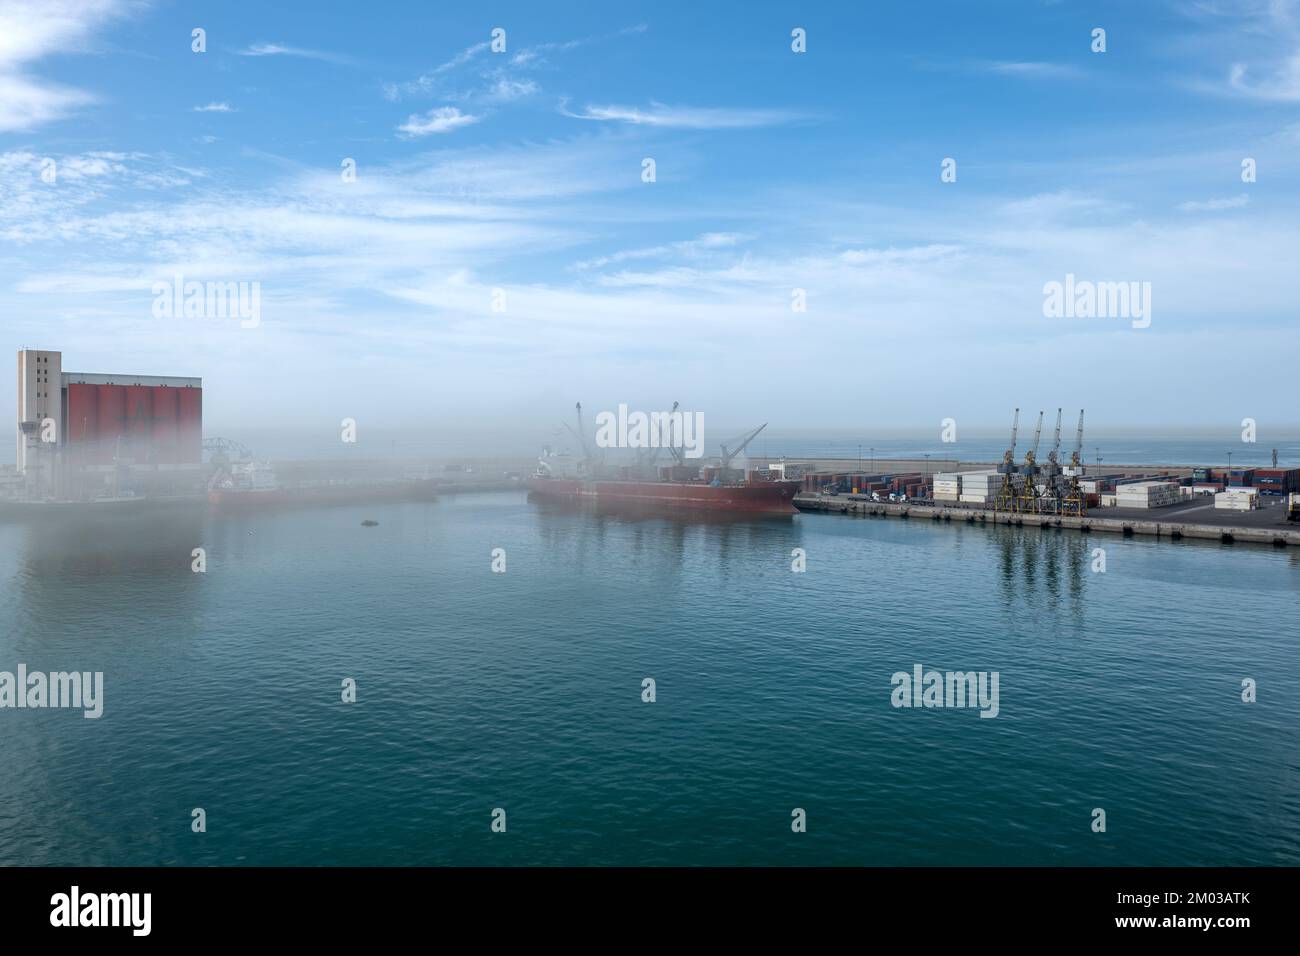 Porto industriale di Agadir con nave al molo (scarsa visibilità a causa di polvere, sabbia, ecc.) Foto Stock